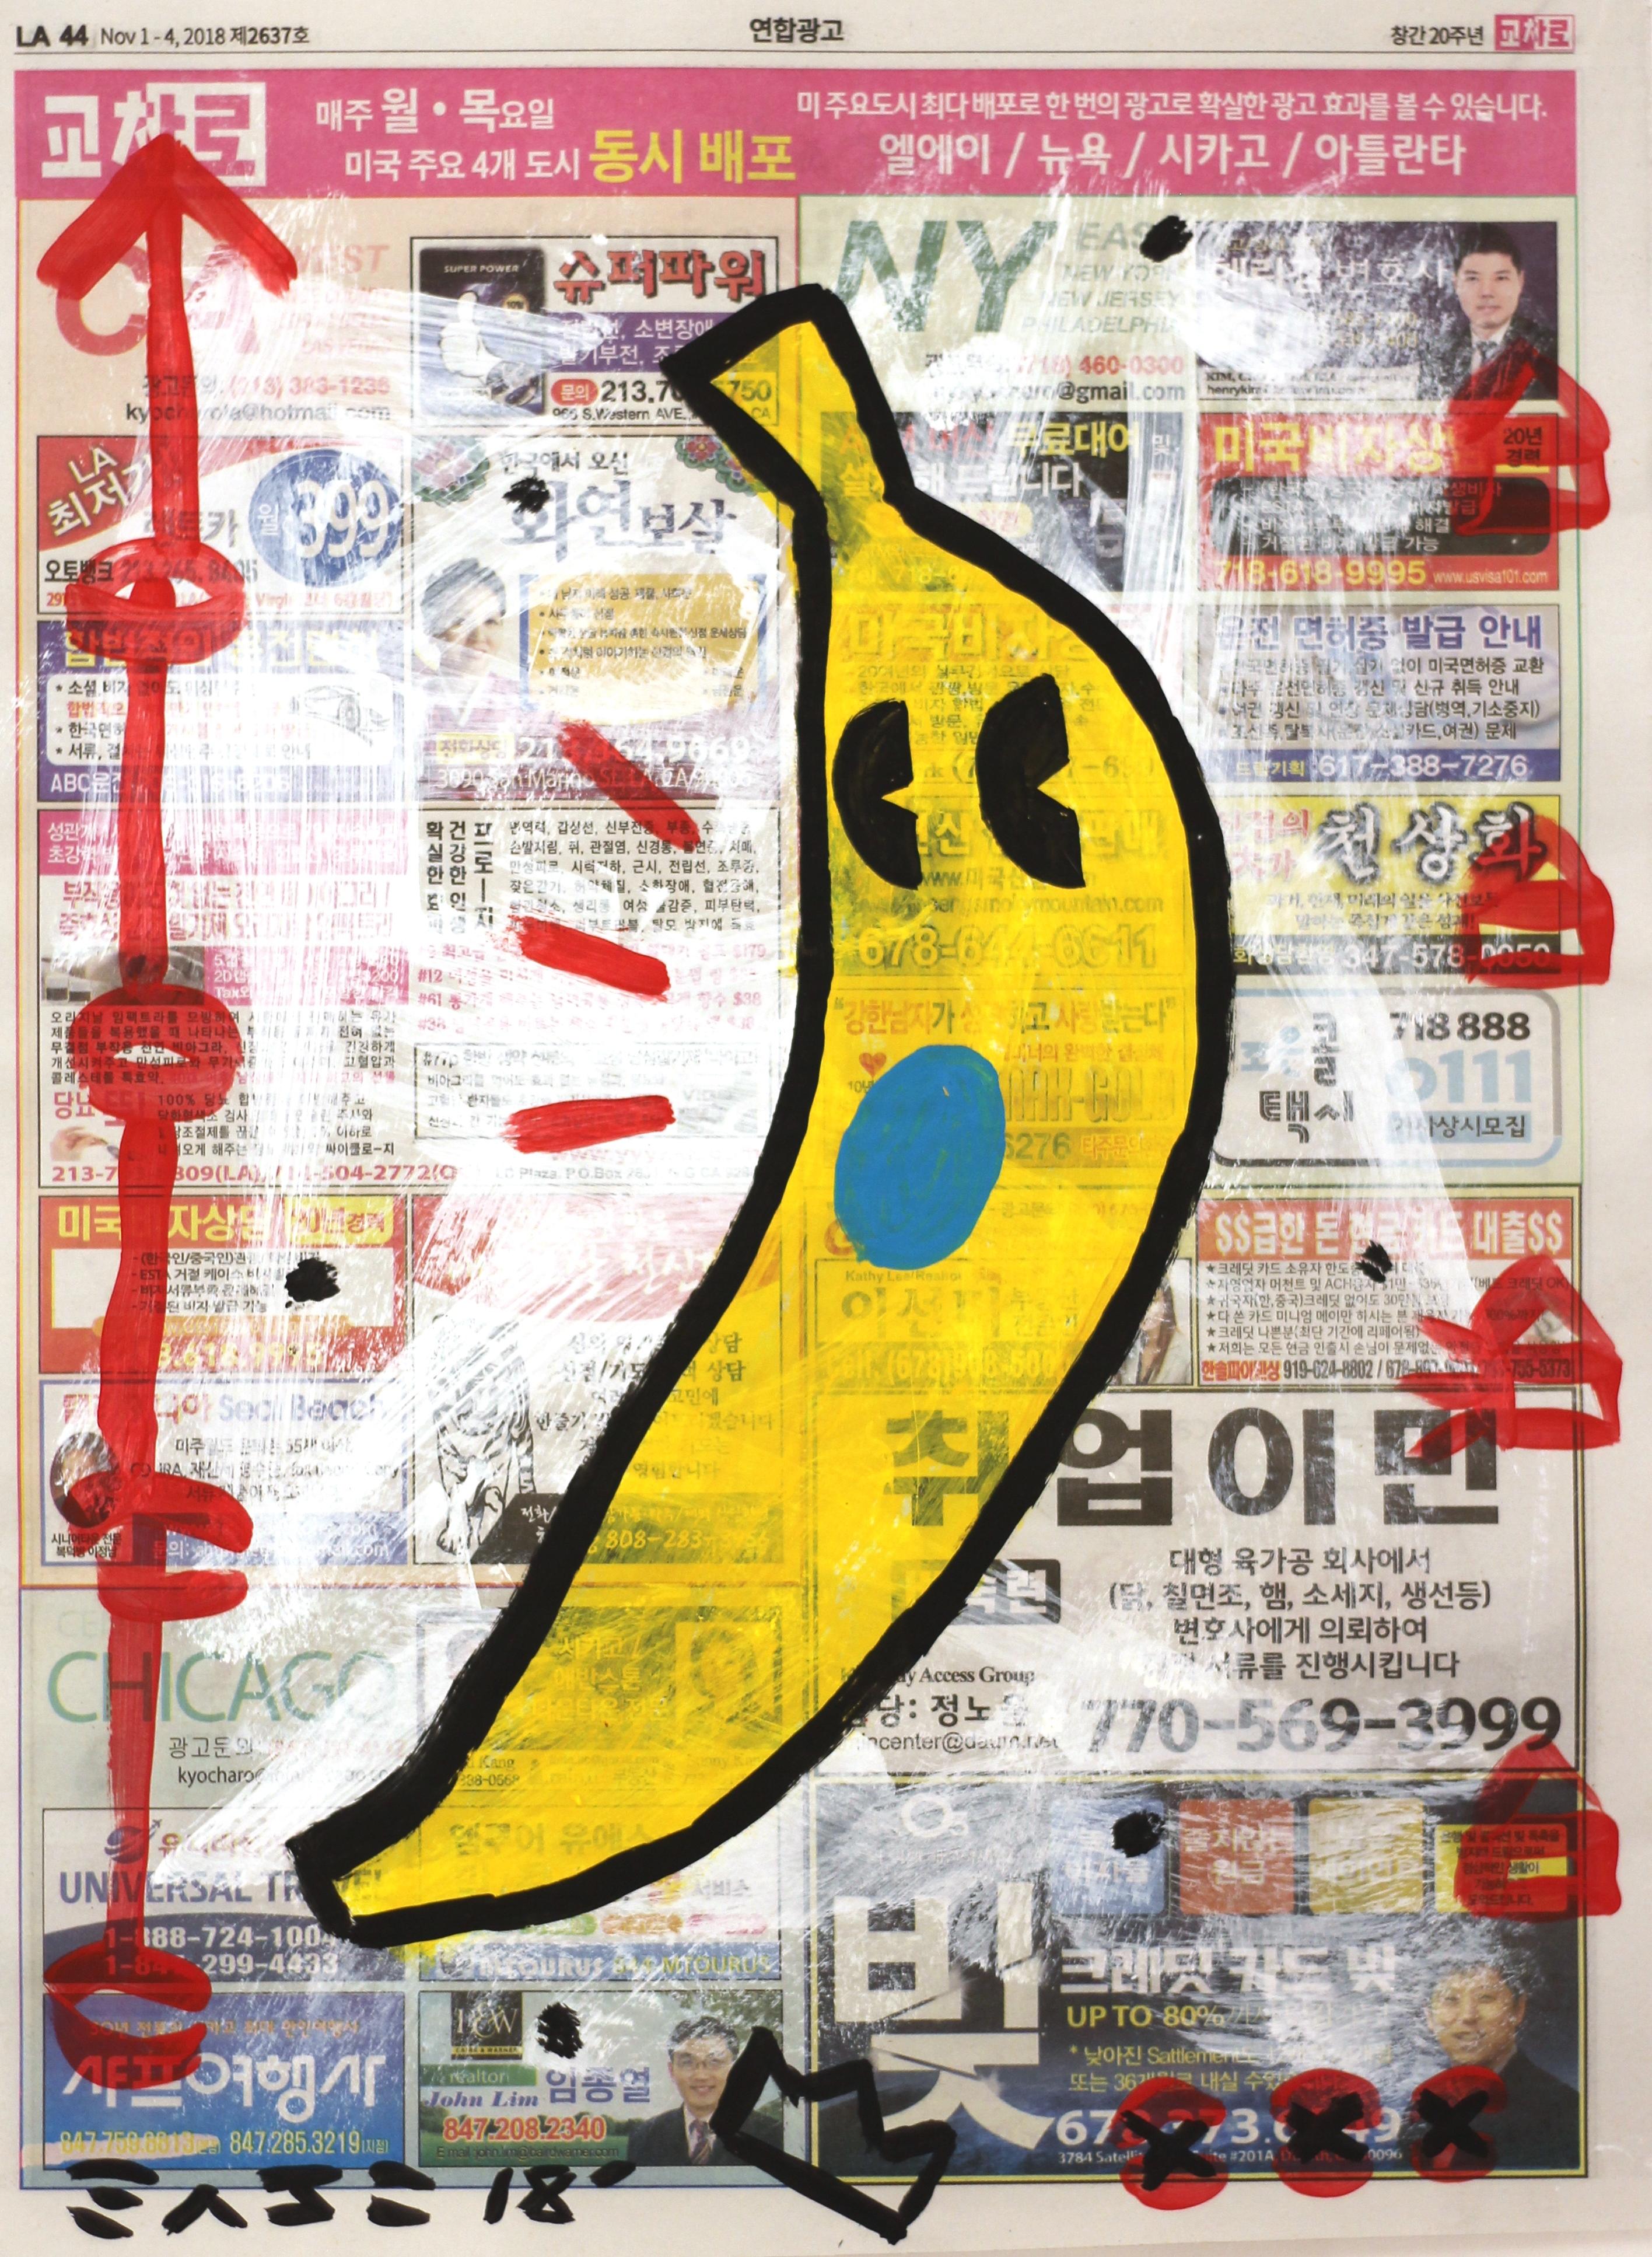 Gary John Abstract Painting – Banana Time